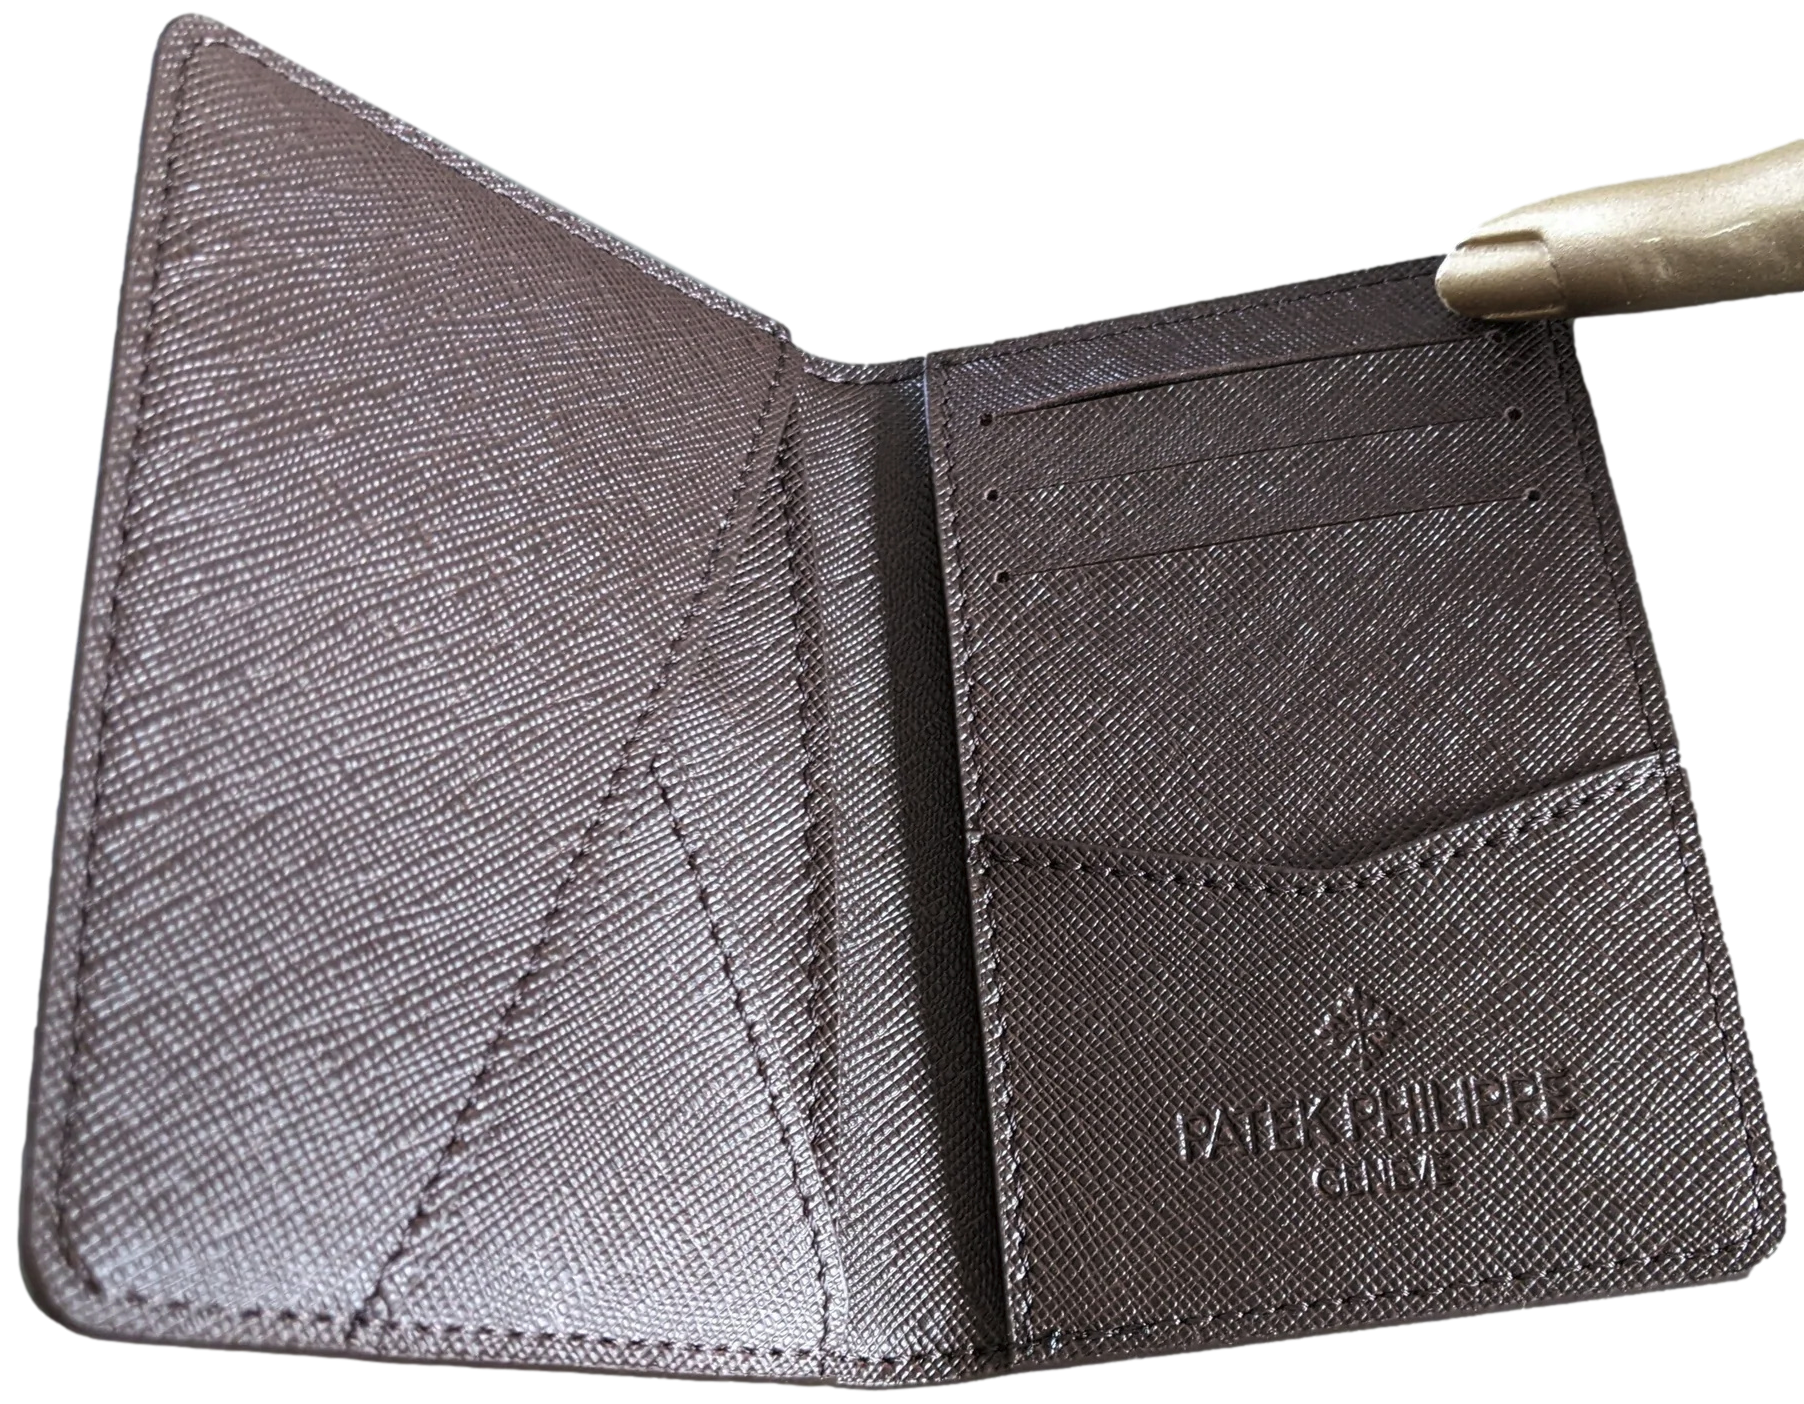 Louis Vuitton Mirror Bifold Wallet BNIB